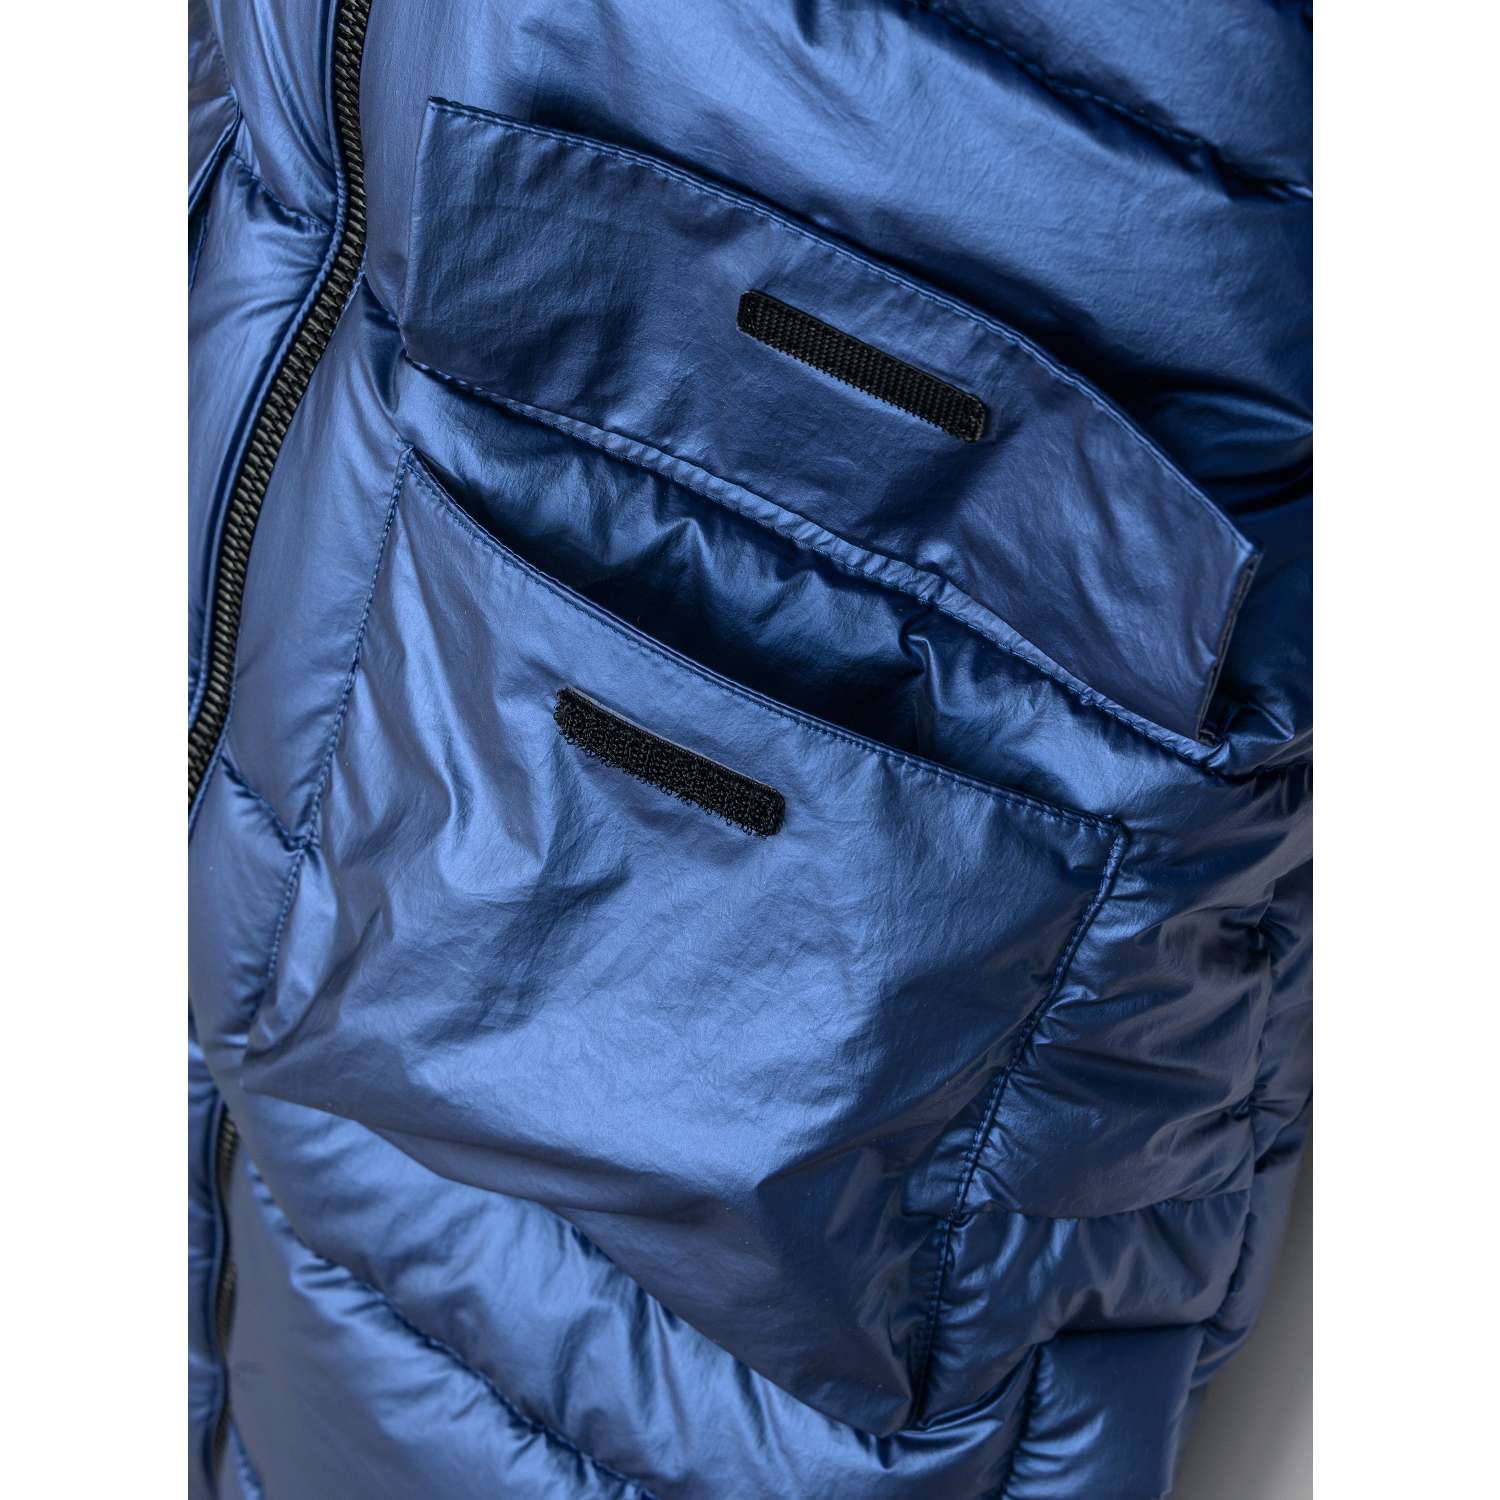 Пальто Orso Bianco OB41124-22_синий блеск - фото 4